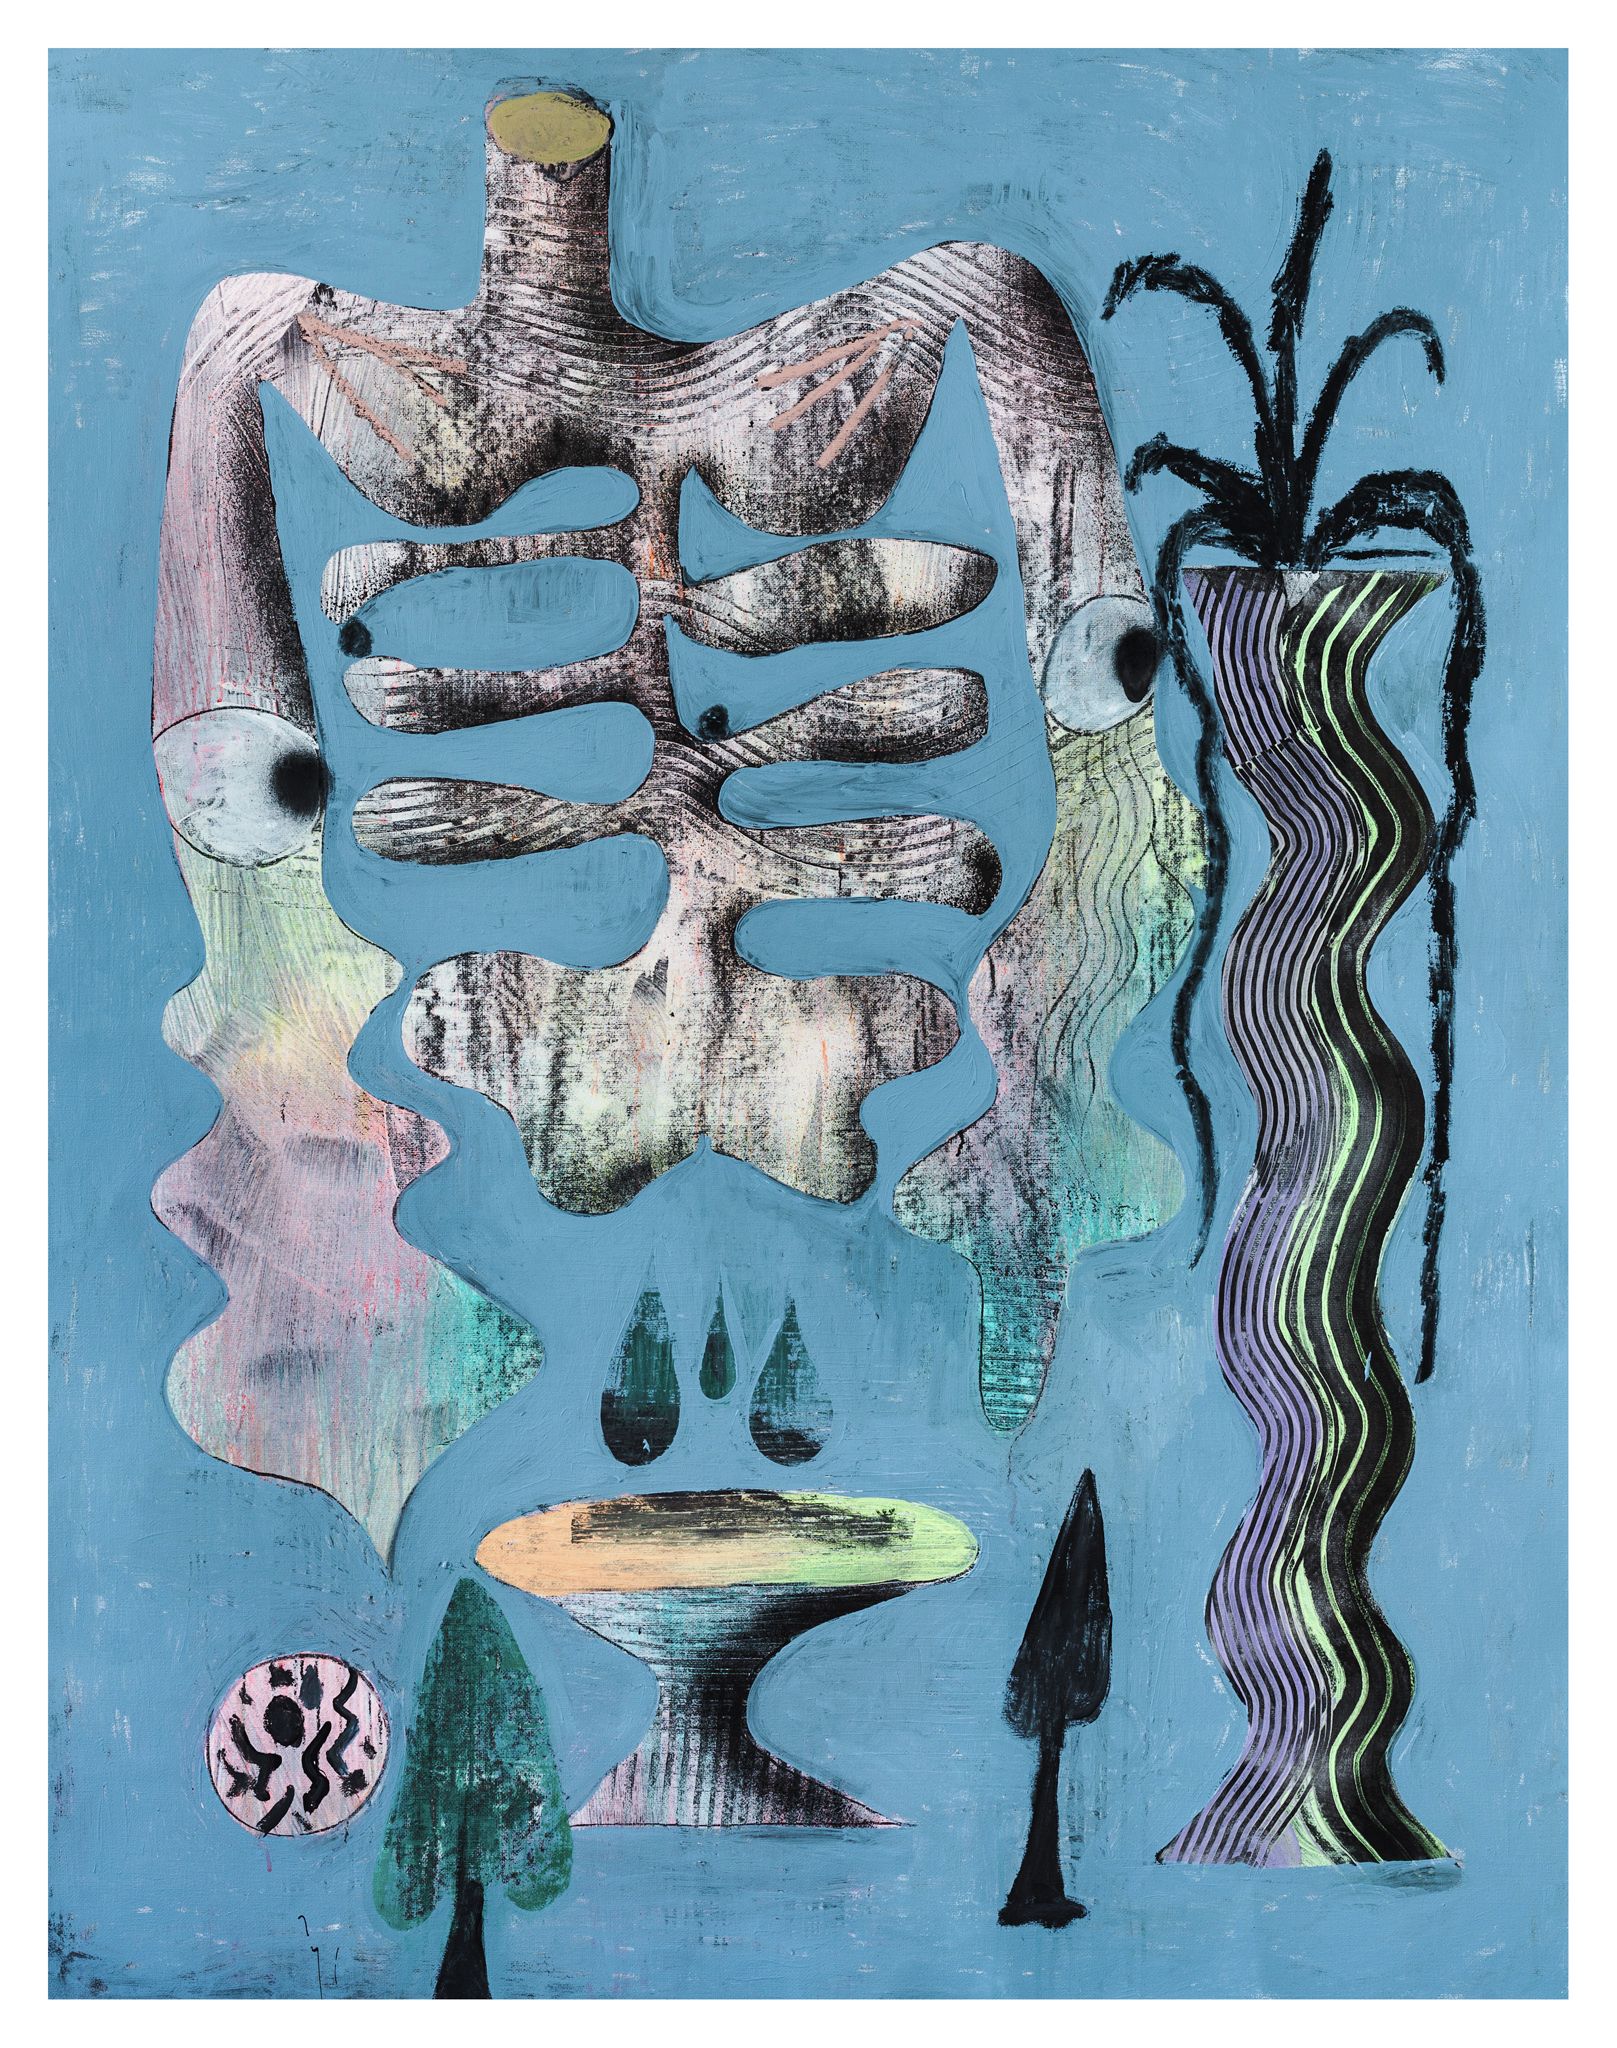 József Csató, Biology of forgetting, 2021 Huile et acrylique sur toile180 × 140 cm / 70 7/8 × 55 1/8 in.